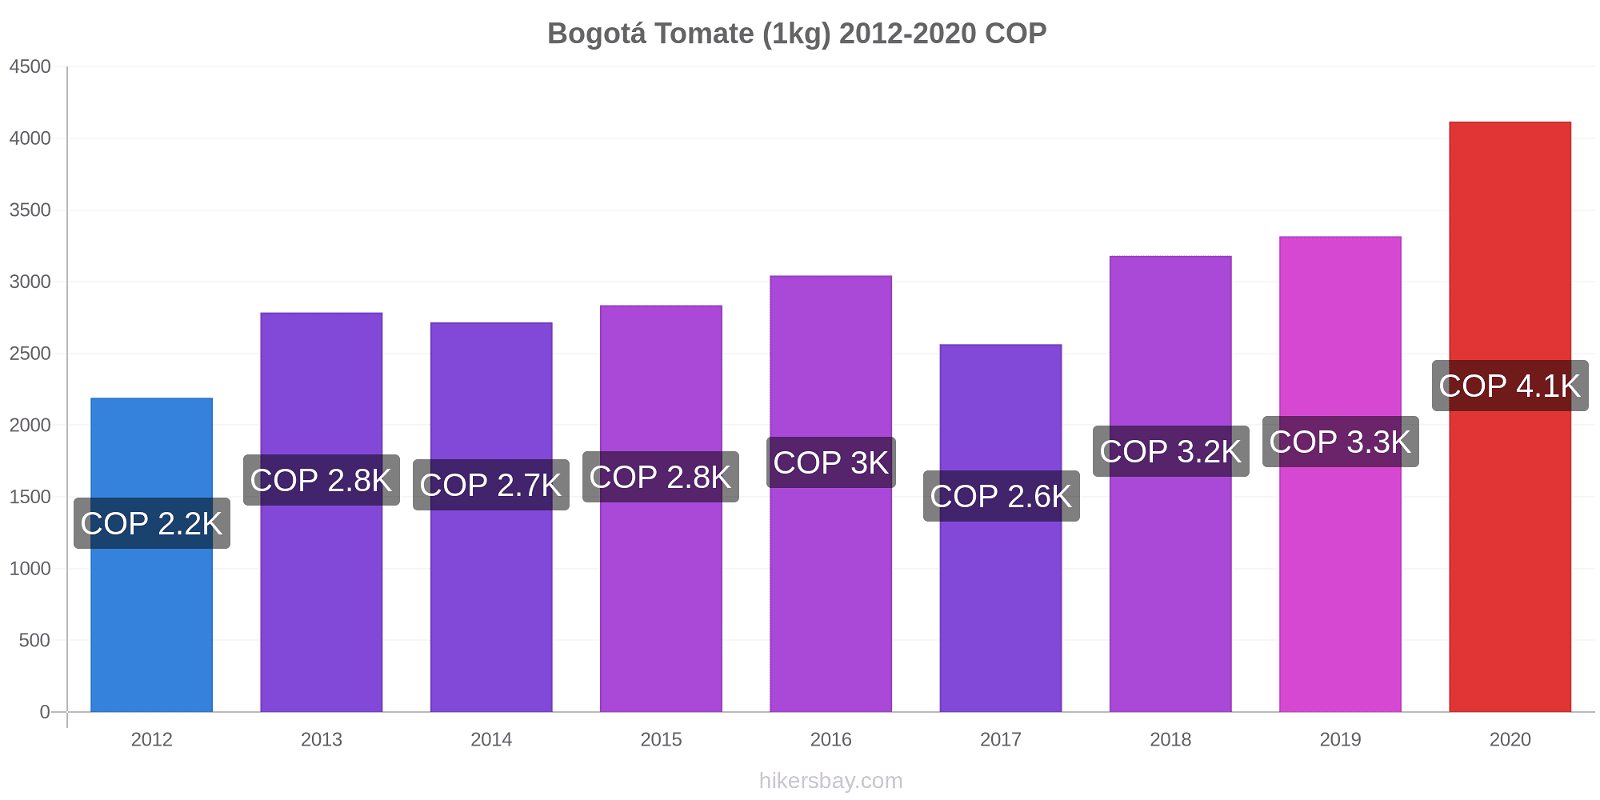 Bogotá cambios de precios Tomate (1kg) hikersbay.com